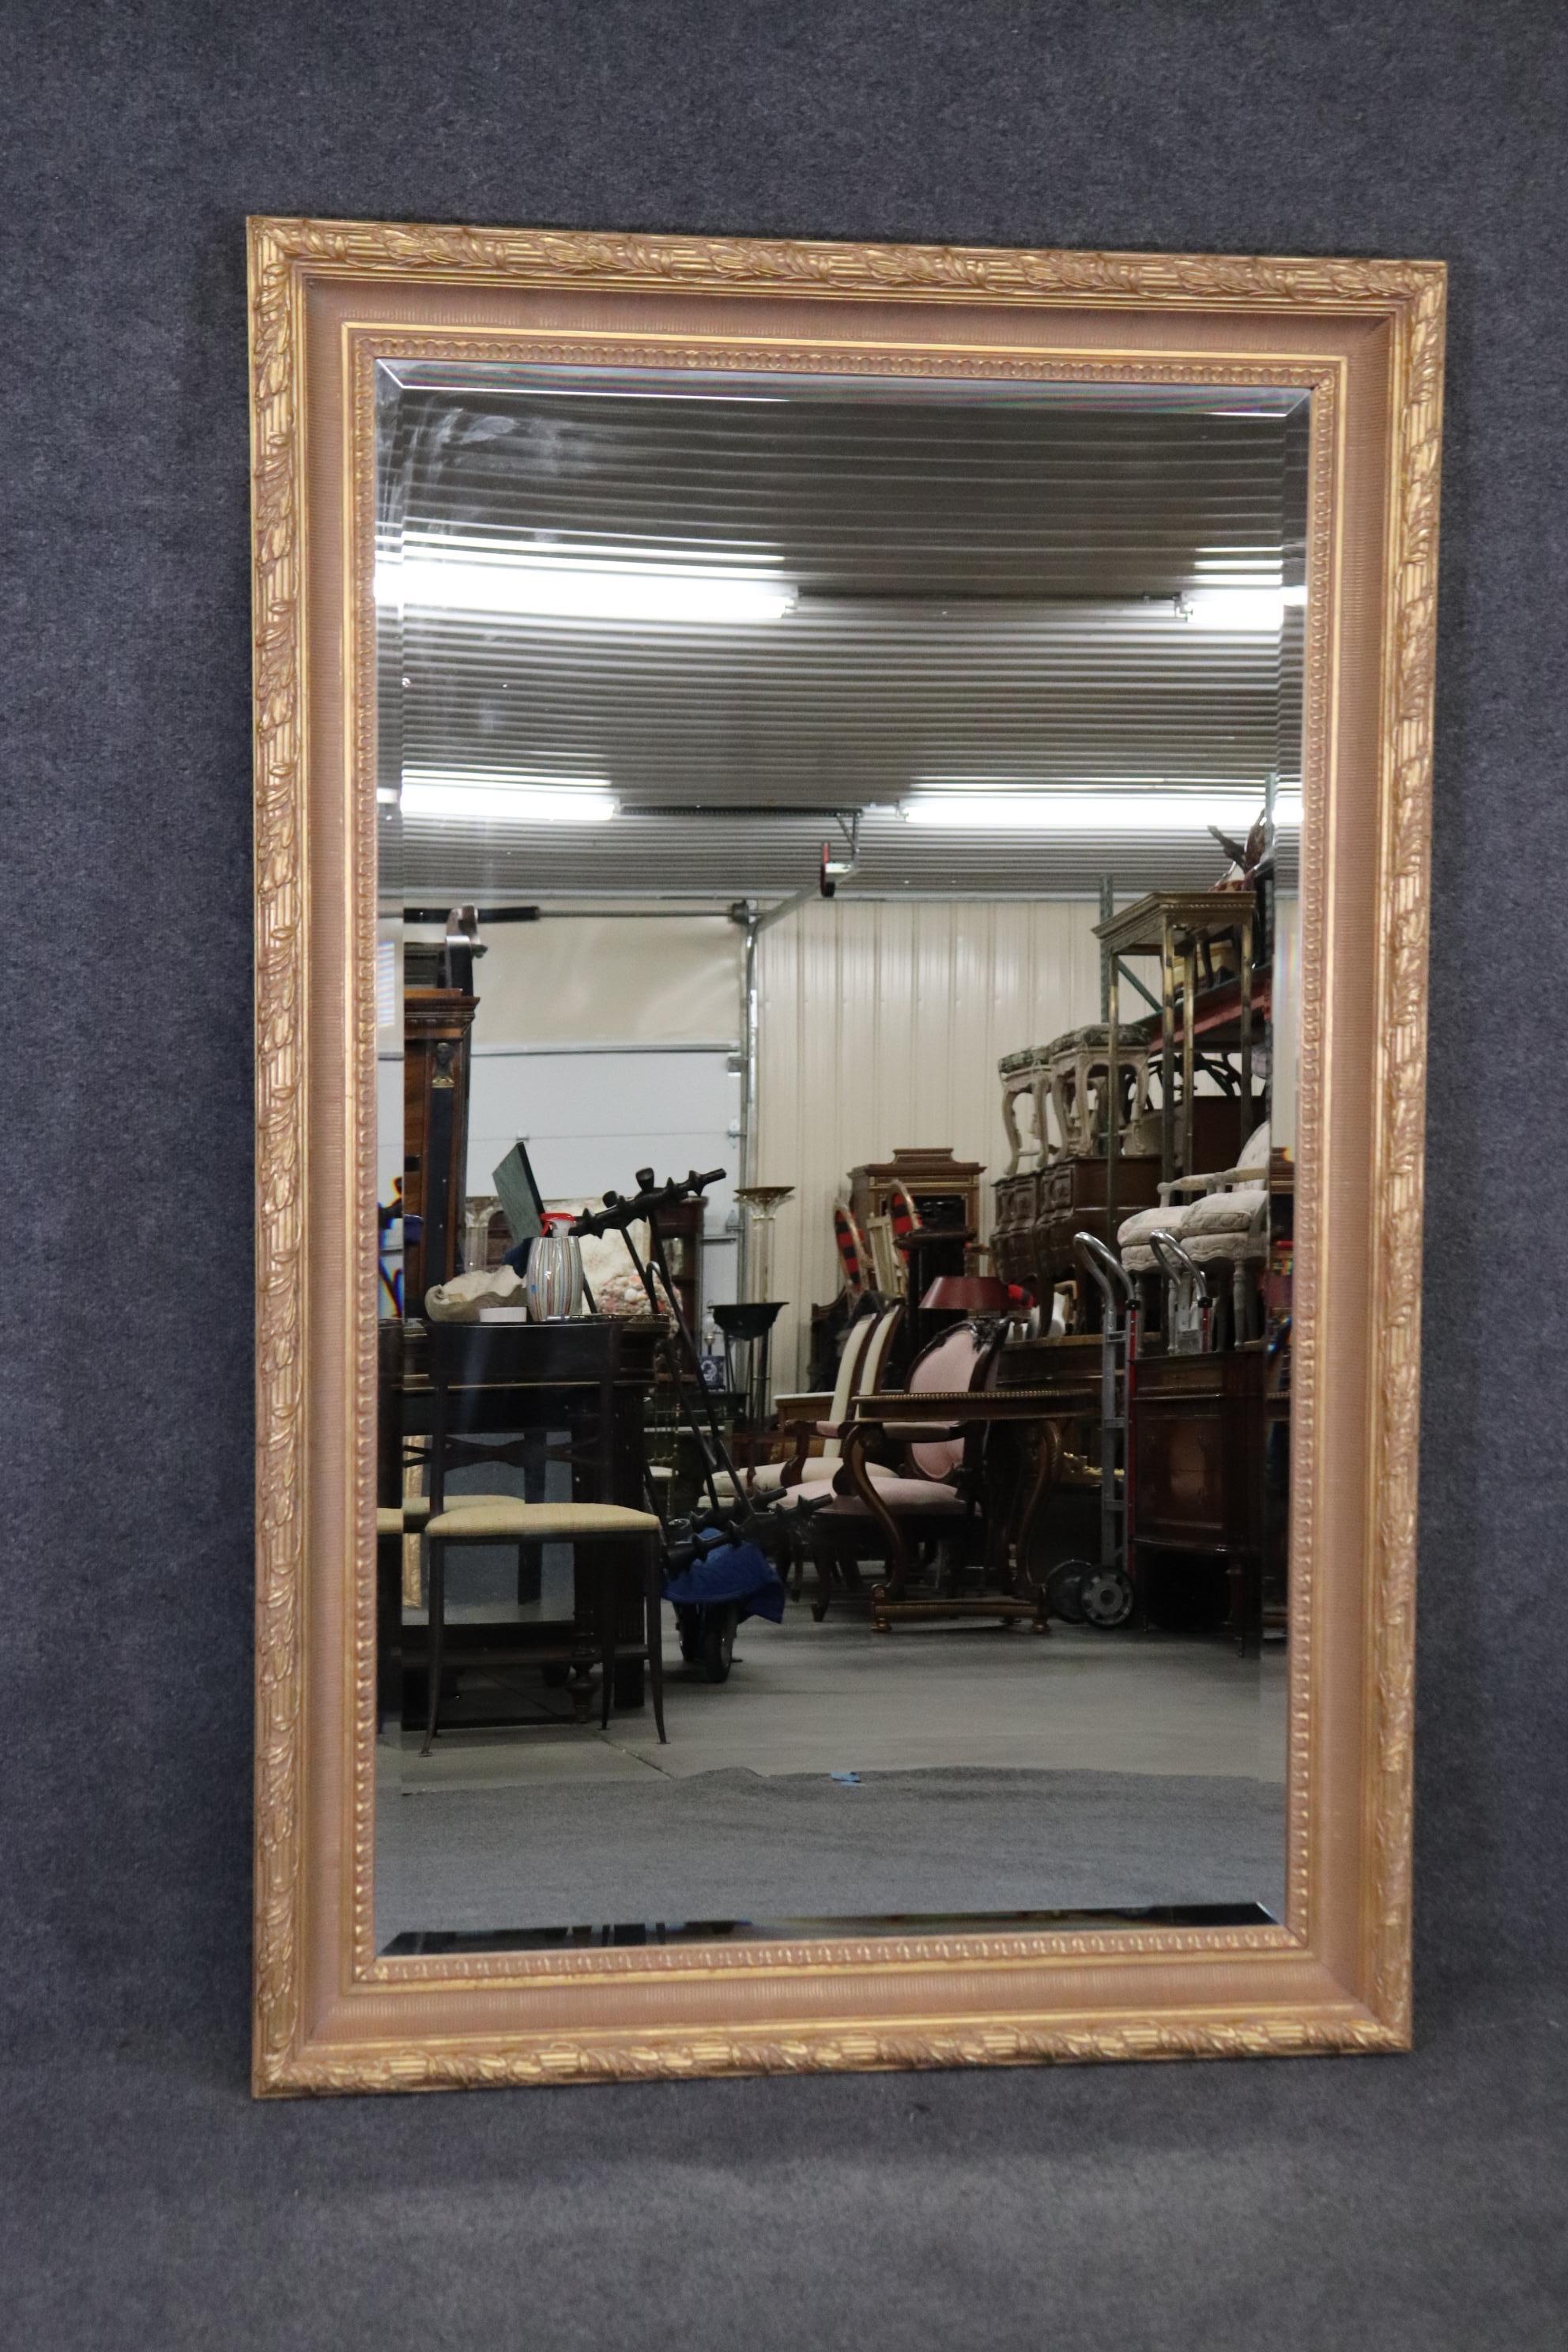 Dimensions - H : 44 1/2in W : 69in D : 3in 
Ce grand miroir en verre biseauté doré de Labarge est fabriqué dans la plus haute qualité et est parfait si vous recherchez un grand miroir avec classe et élégance ! Ce miroir est équipé d'un cadre sculpté